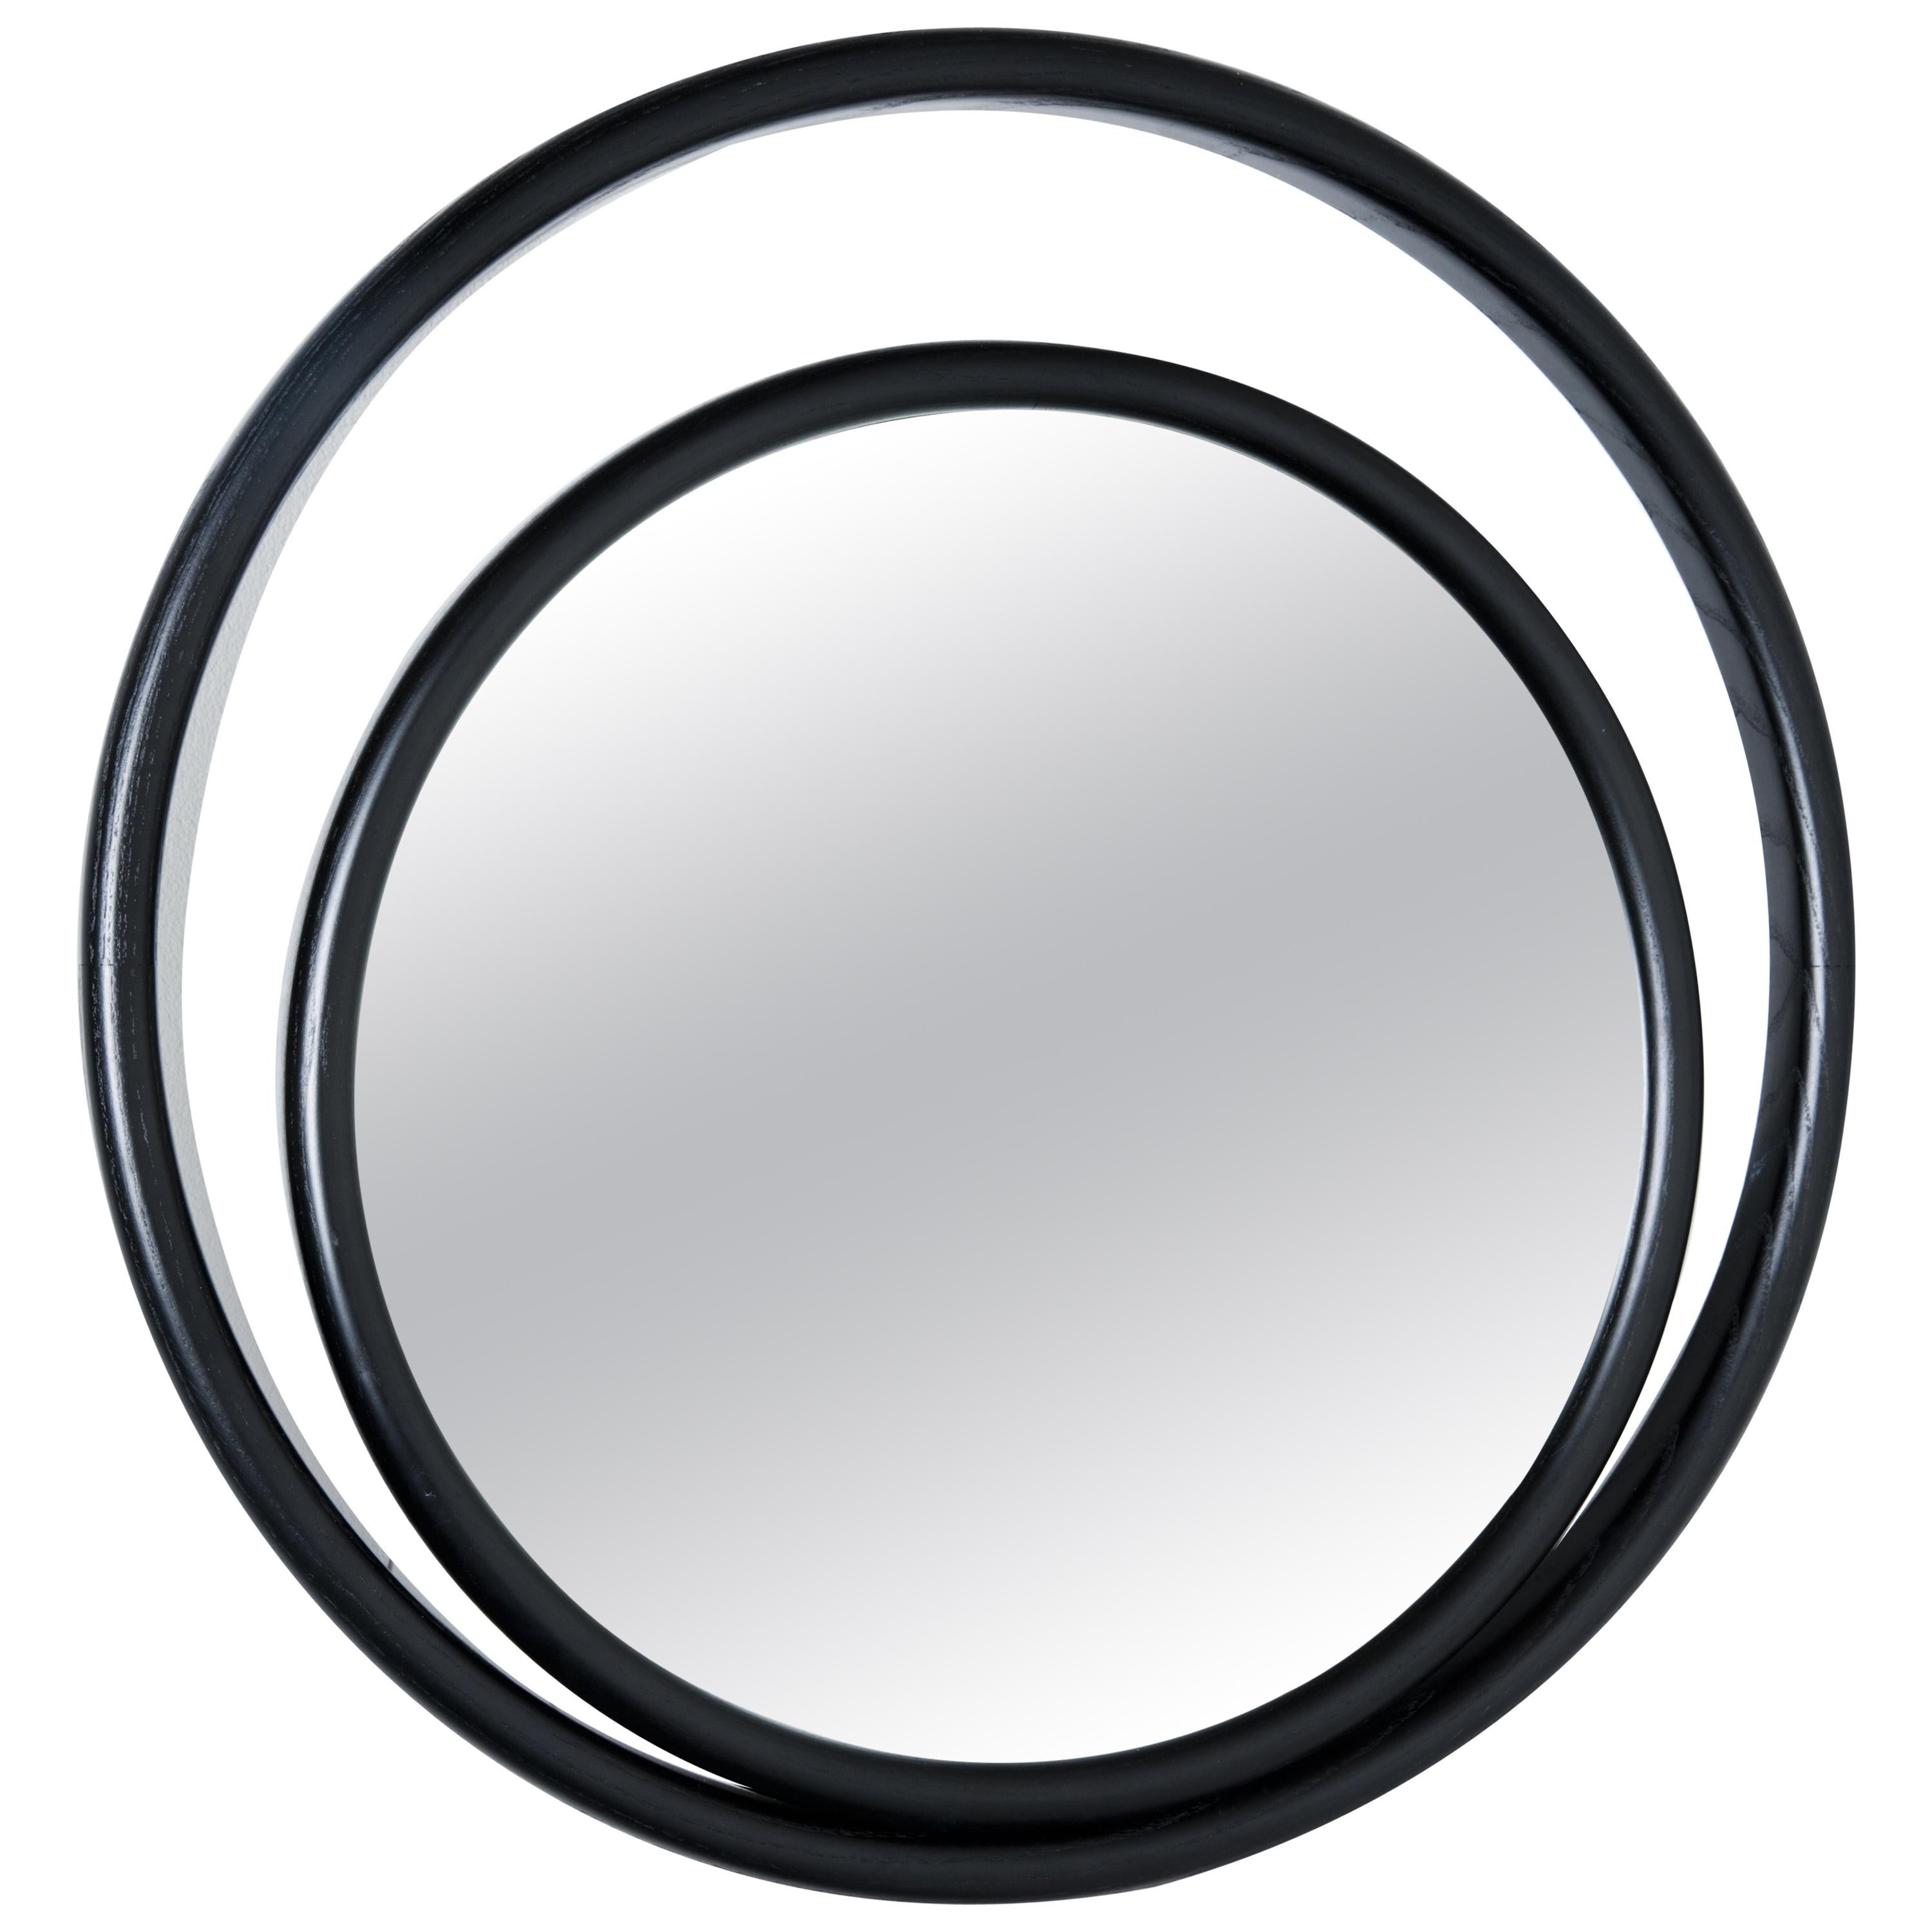 Gebrüder Thonet Vienna GmbH Eyeshine Large Circular Mirror in Black Wood Frame